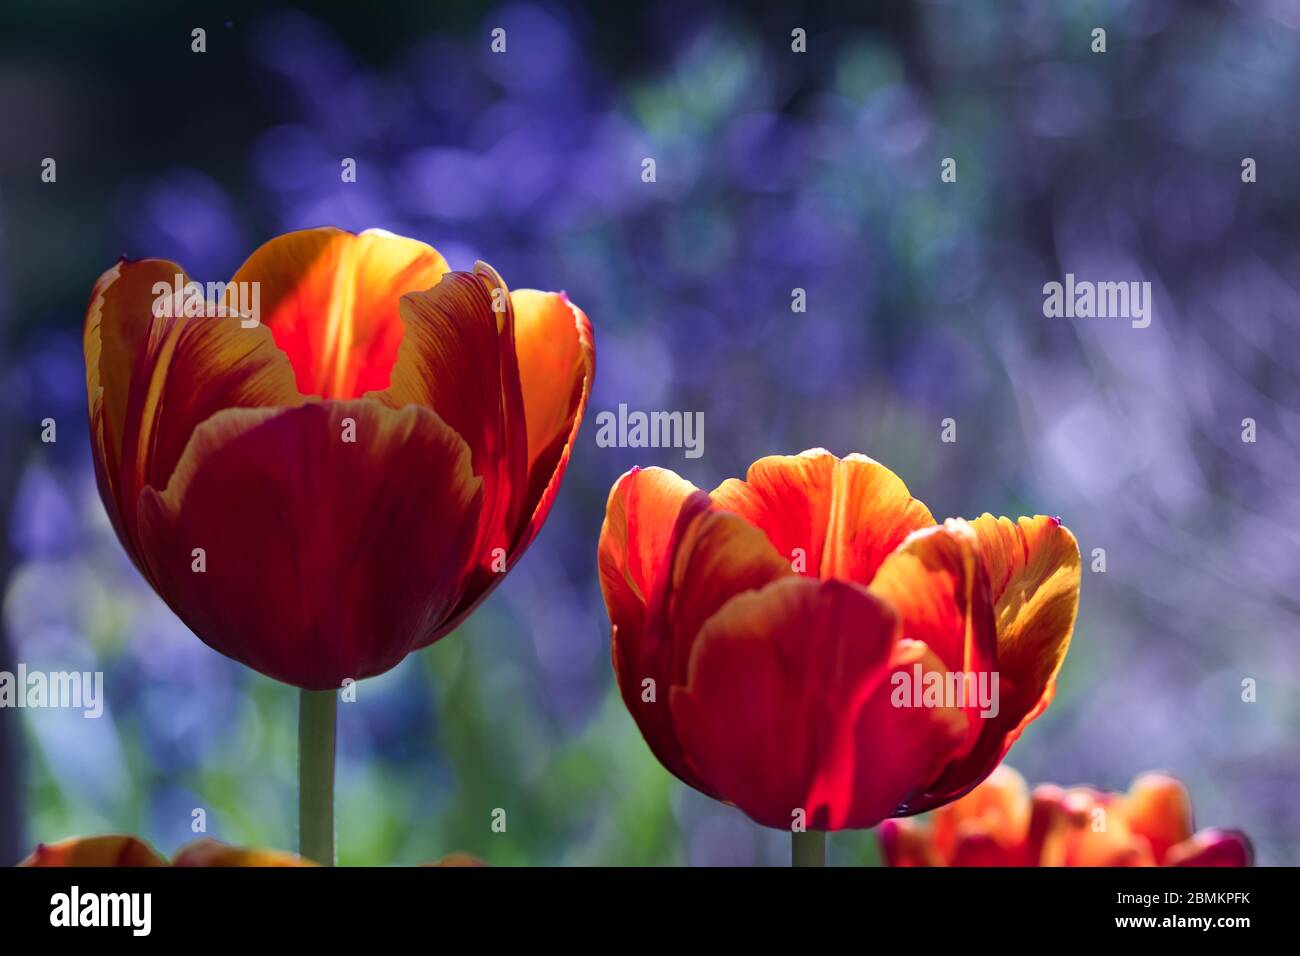 Flor de fuego - rojo naranja tulipán flores en flor con la luz del sol caliente sobre los pétalos feroces sobre fondo azul púrpura borroso, contraste de luz y sombras, Foto de stock